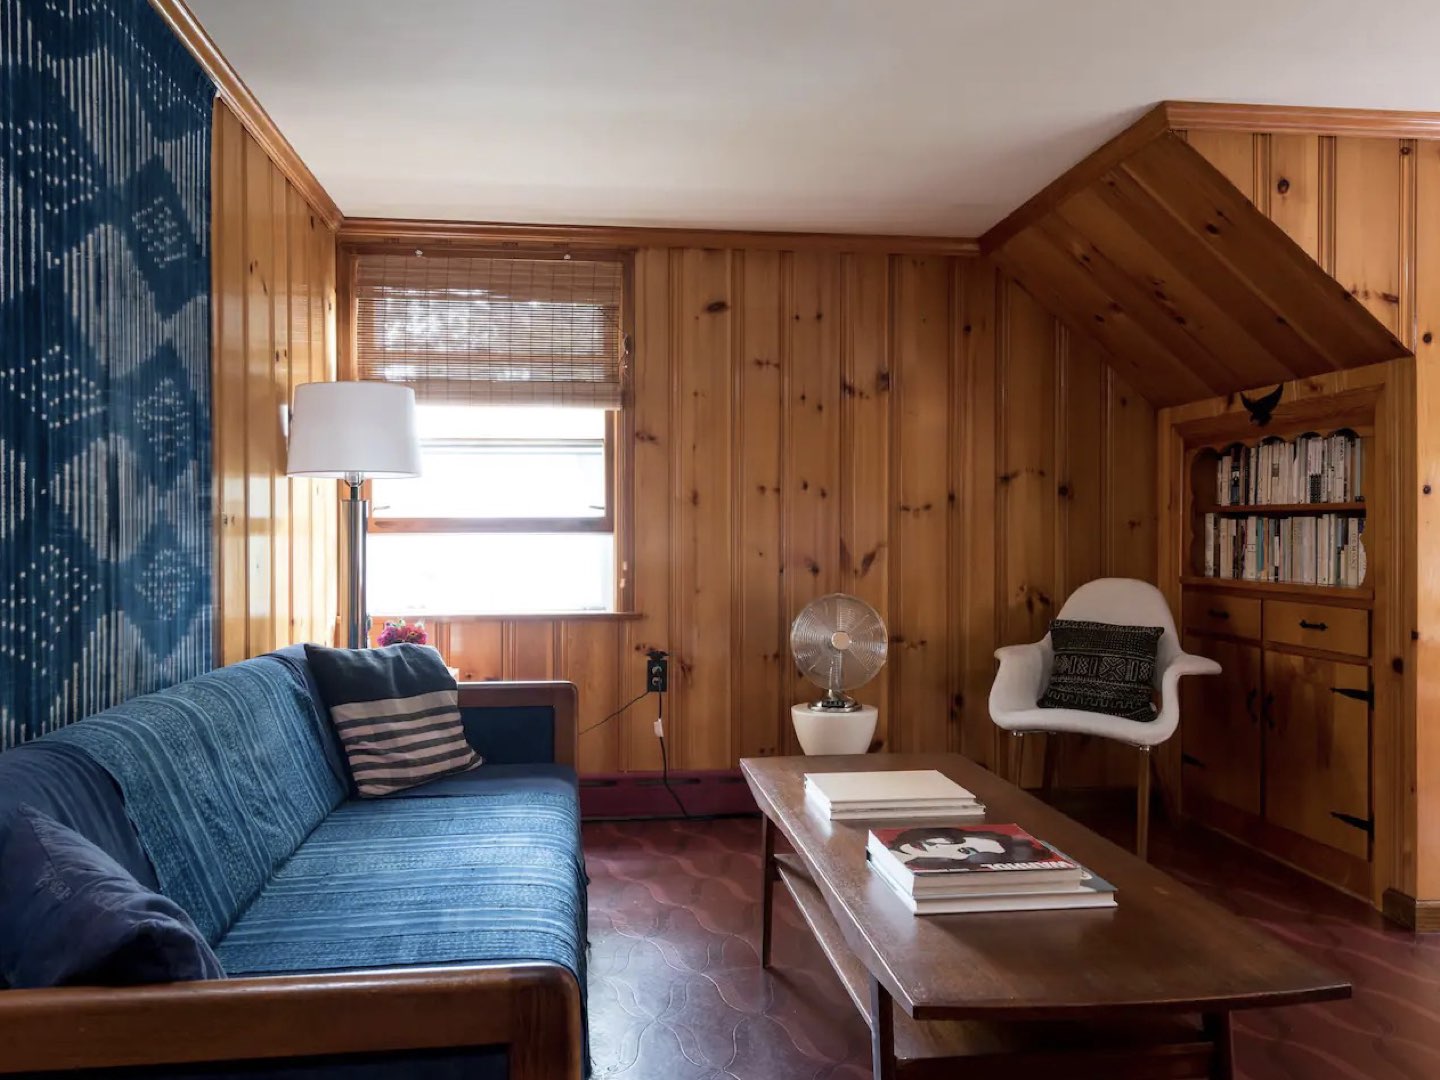 visite deco appartement mid century modern salon séjour revêtement mural bois lambris vernis couleur complémentaire bleu textile canapé et tenture mur